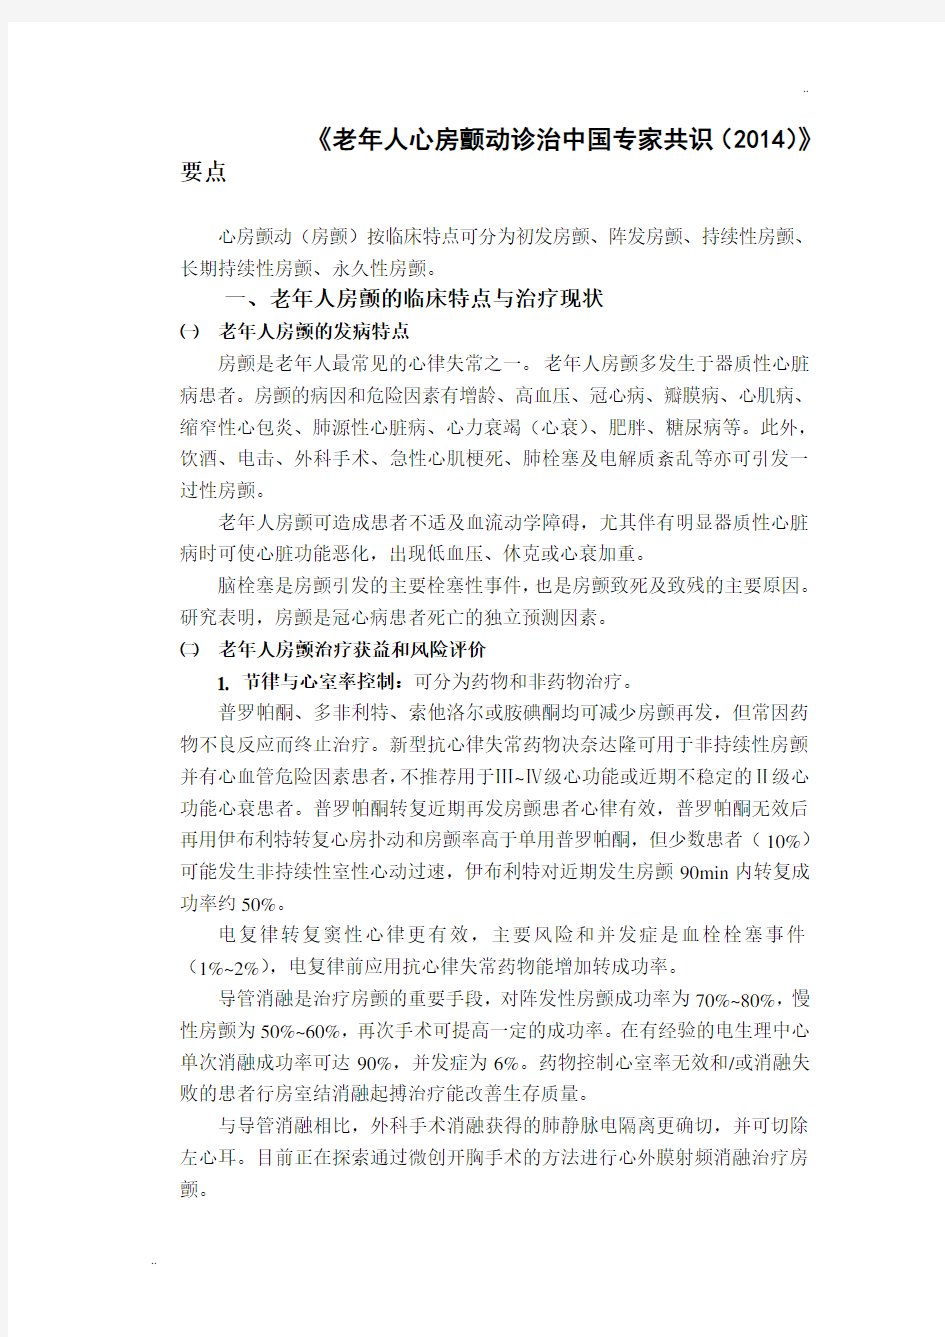 《老年人心房颤动诊治中国专家共识(2014)》要点